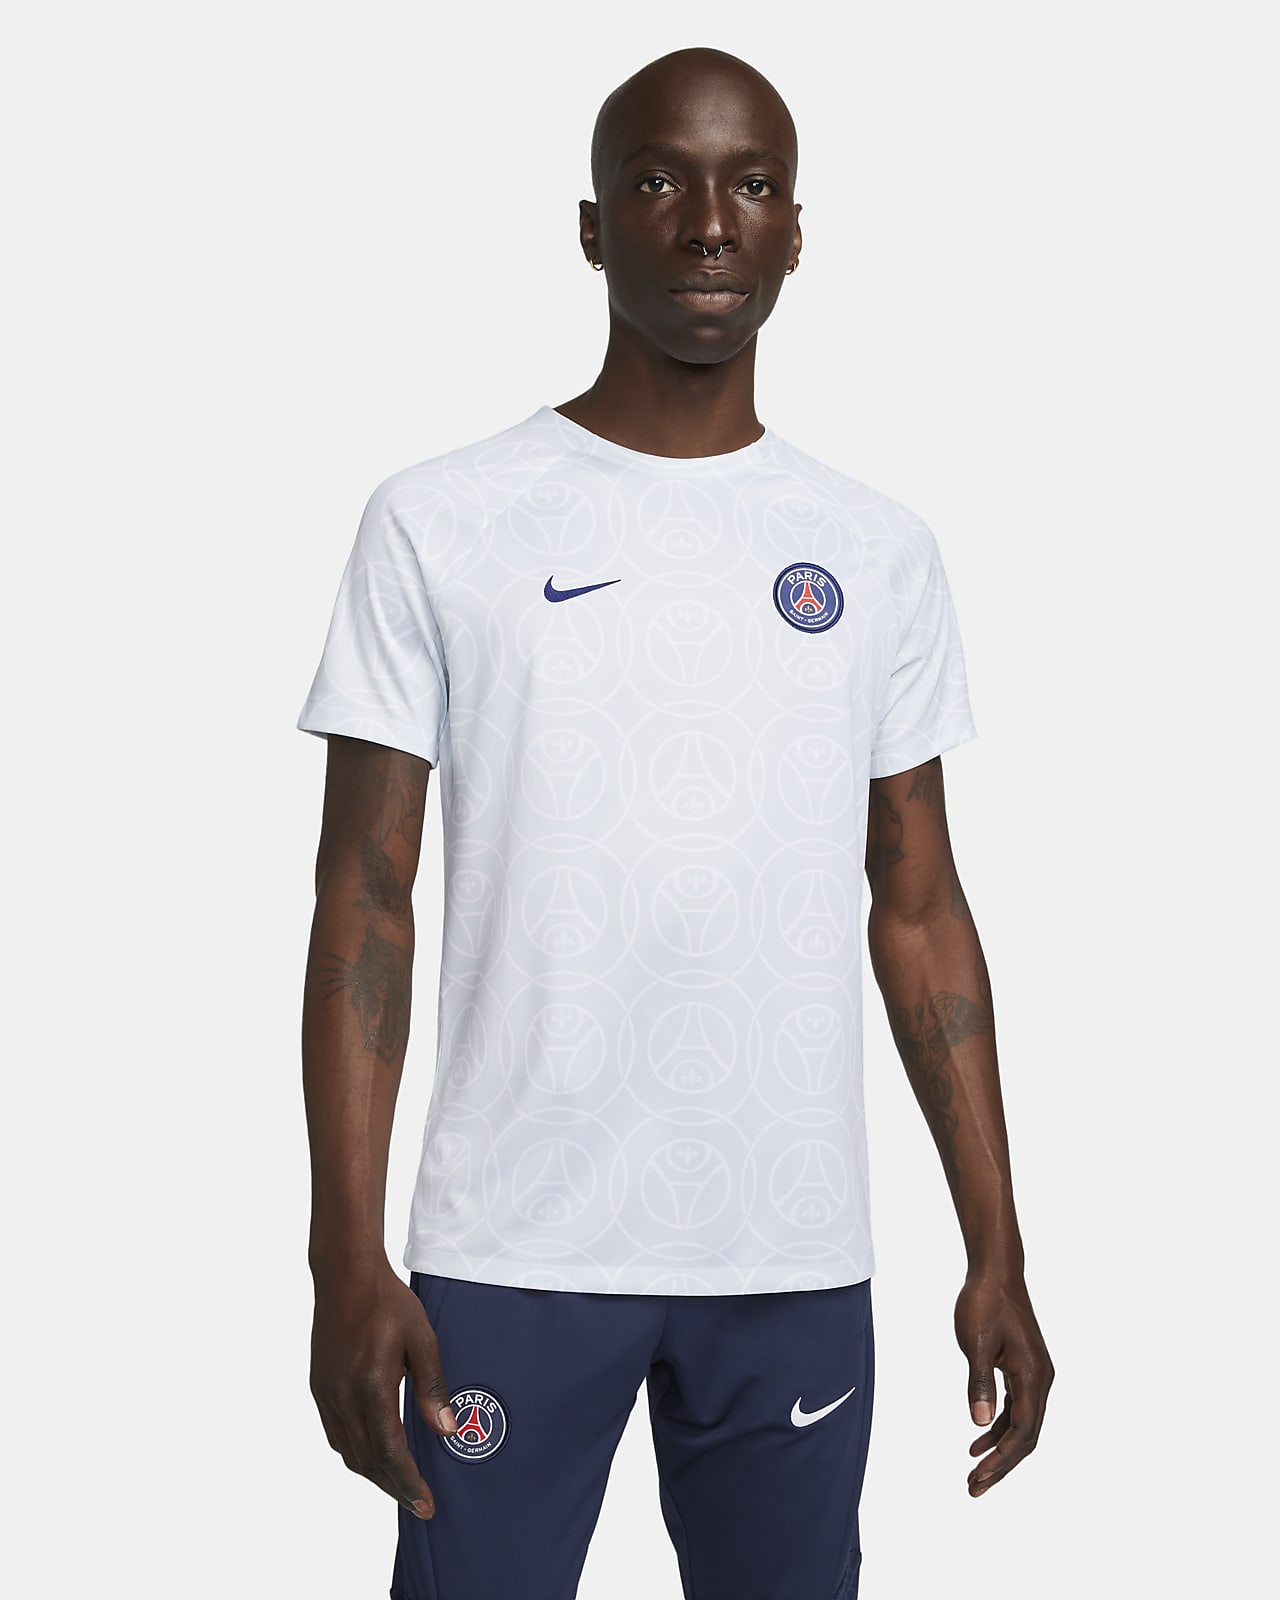 Paris Saint-Germain Academy Pro Men's Nike Dri-FIT Pre-Match Soccer Top.